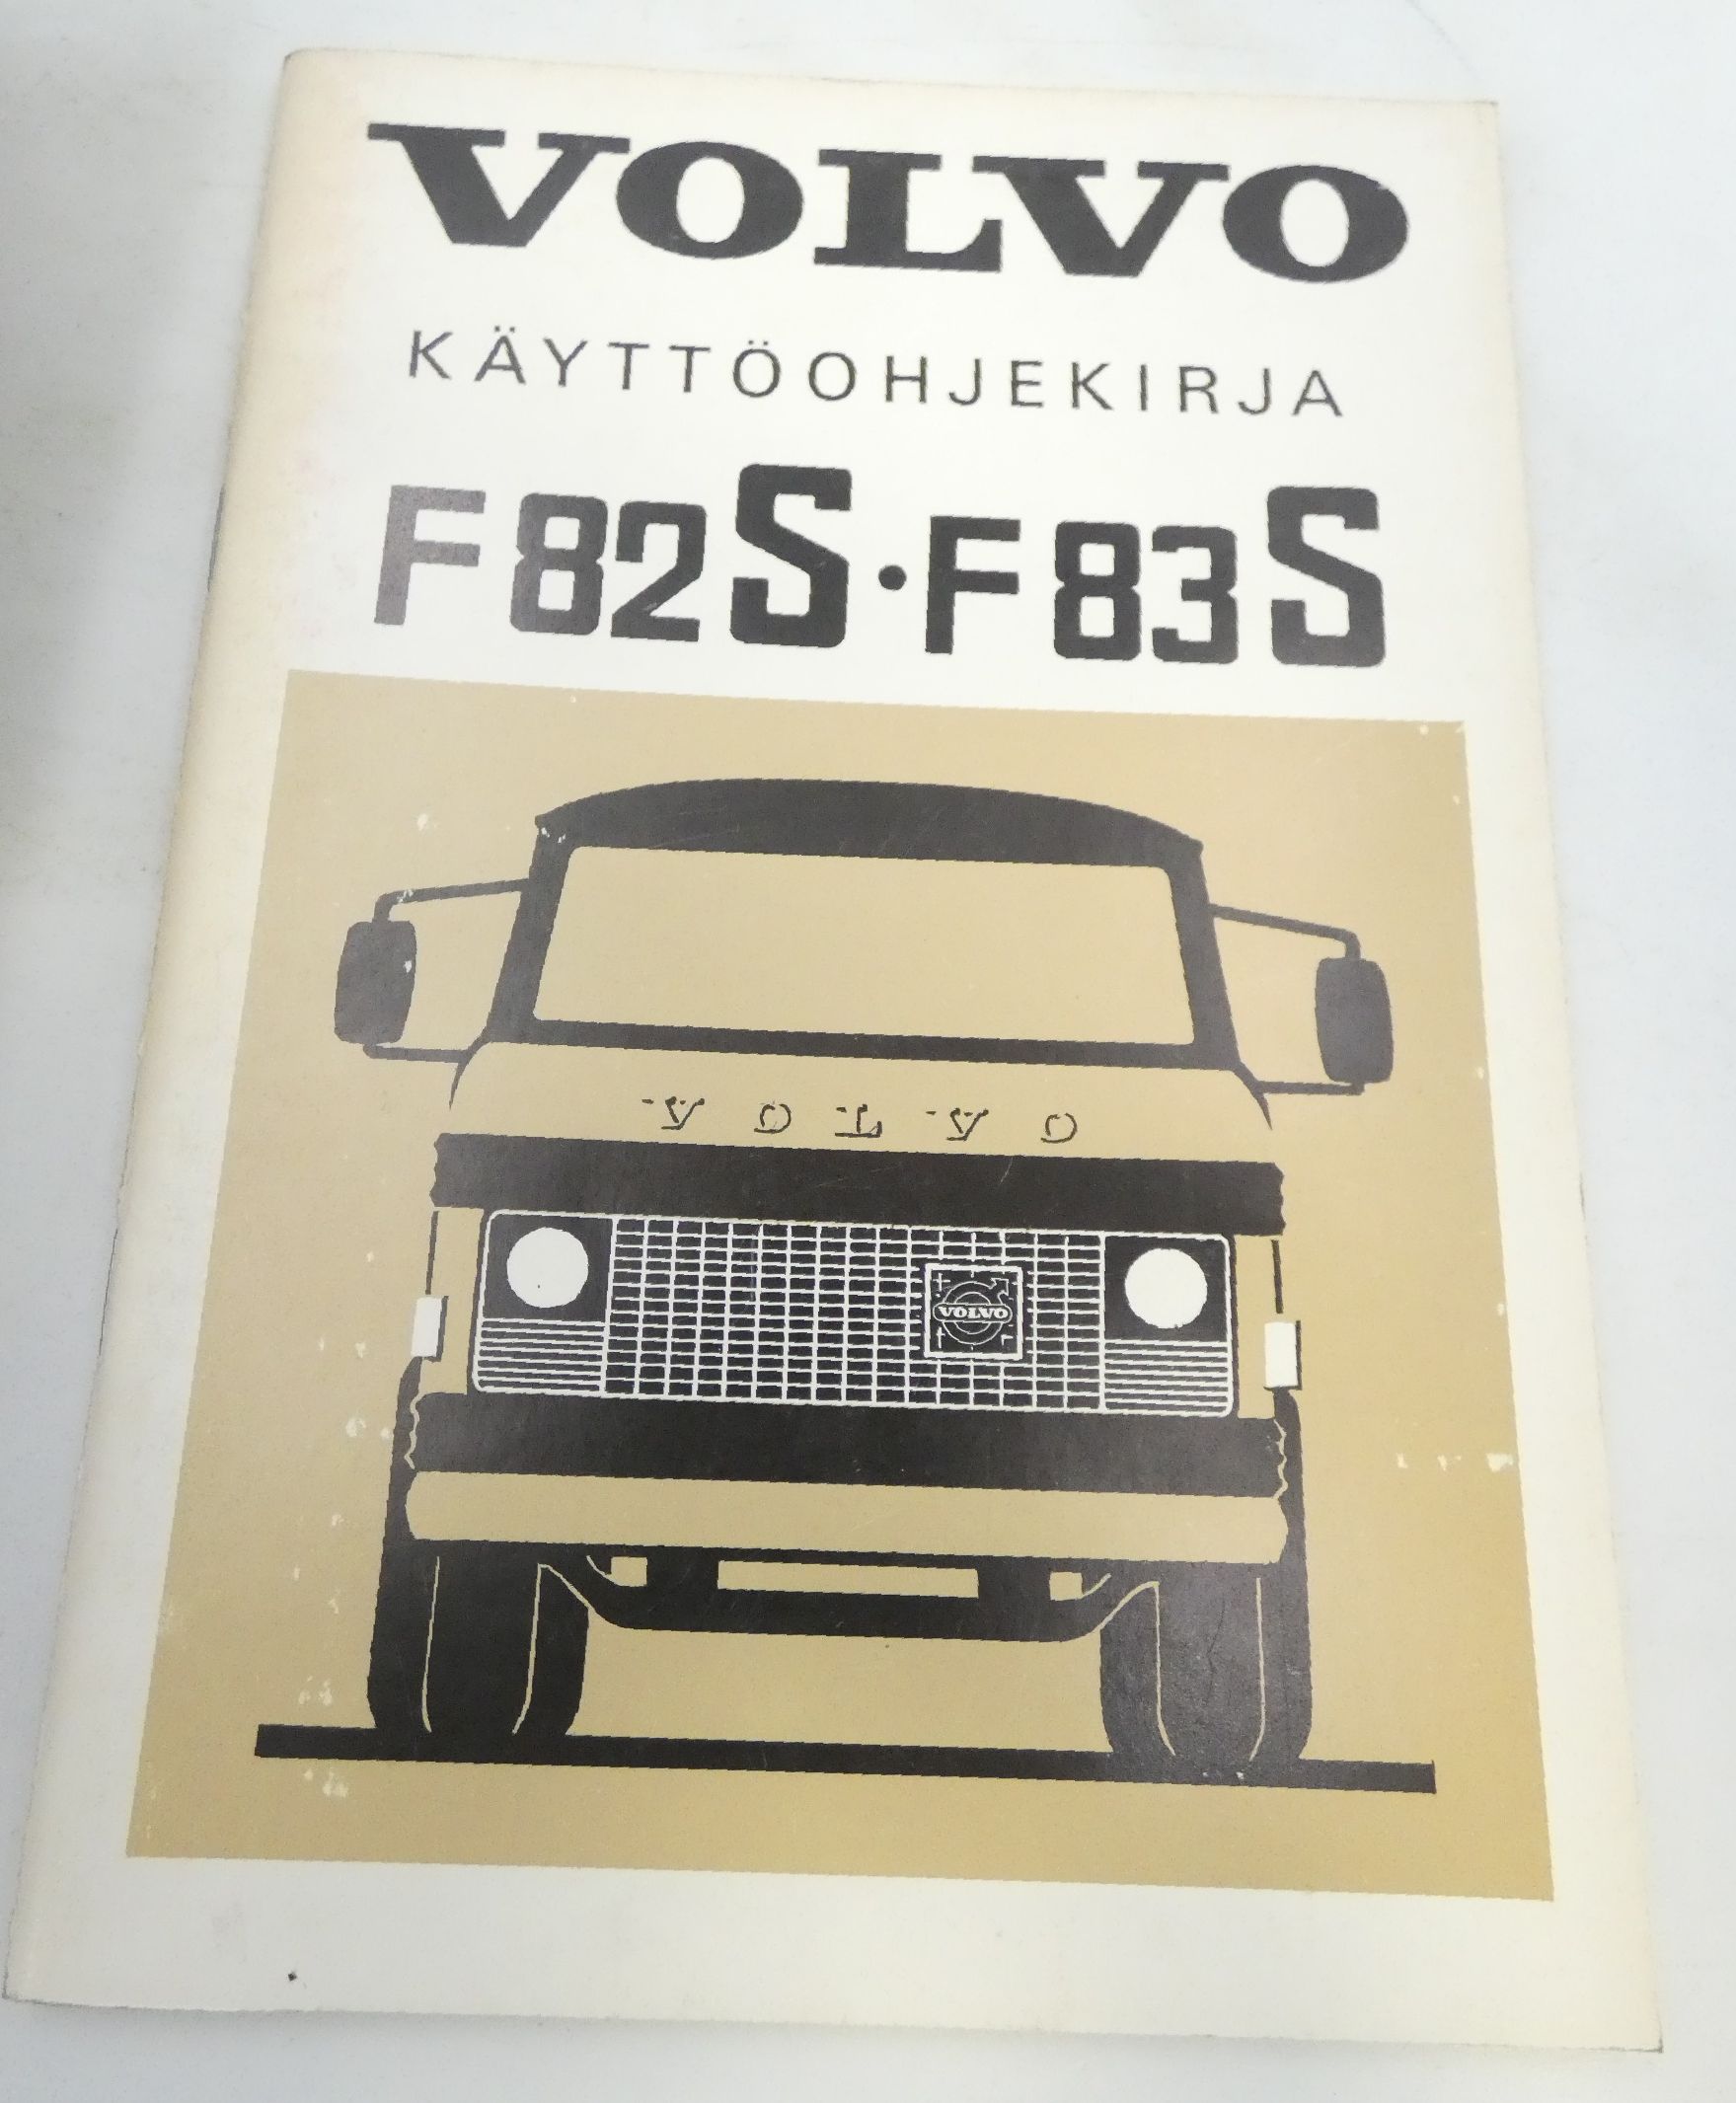 Volvo F82S-F83S käyttöohjekirja